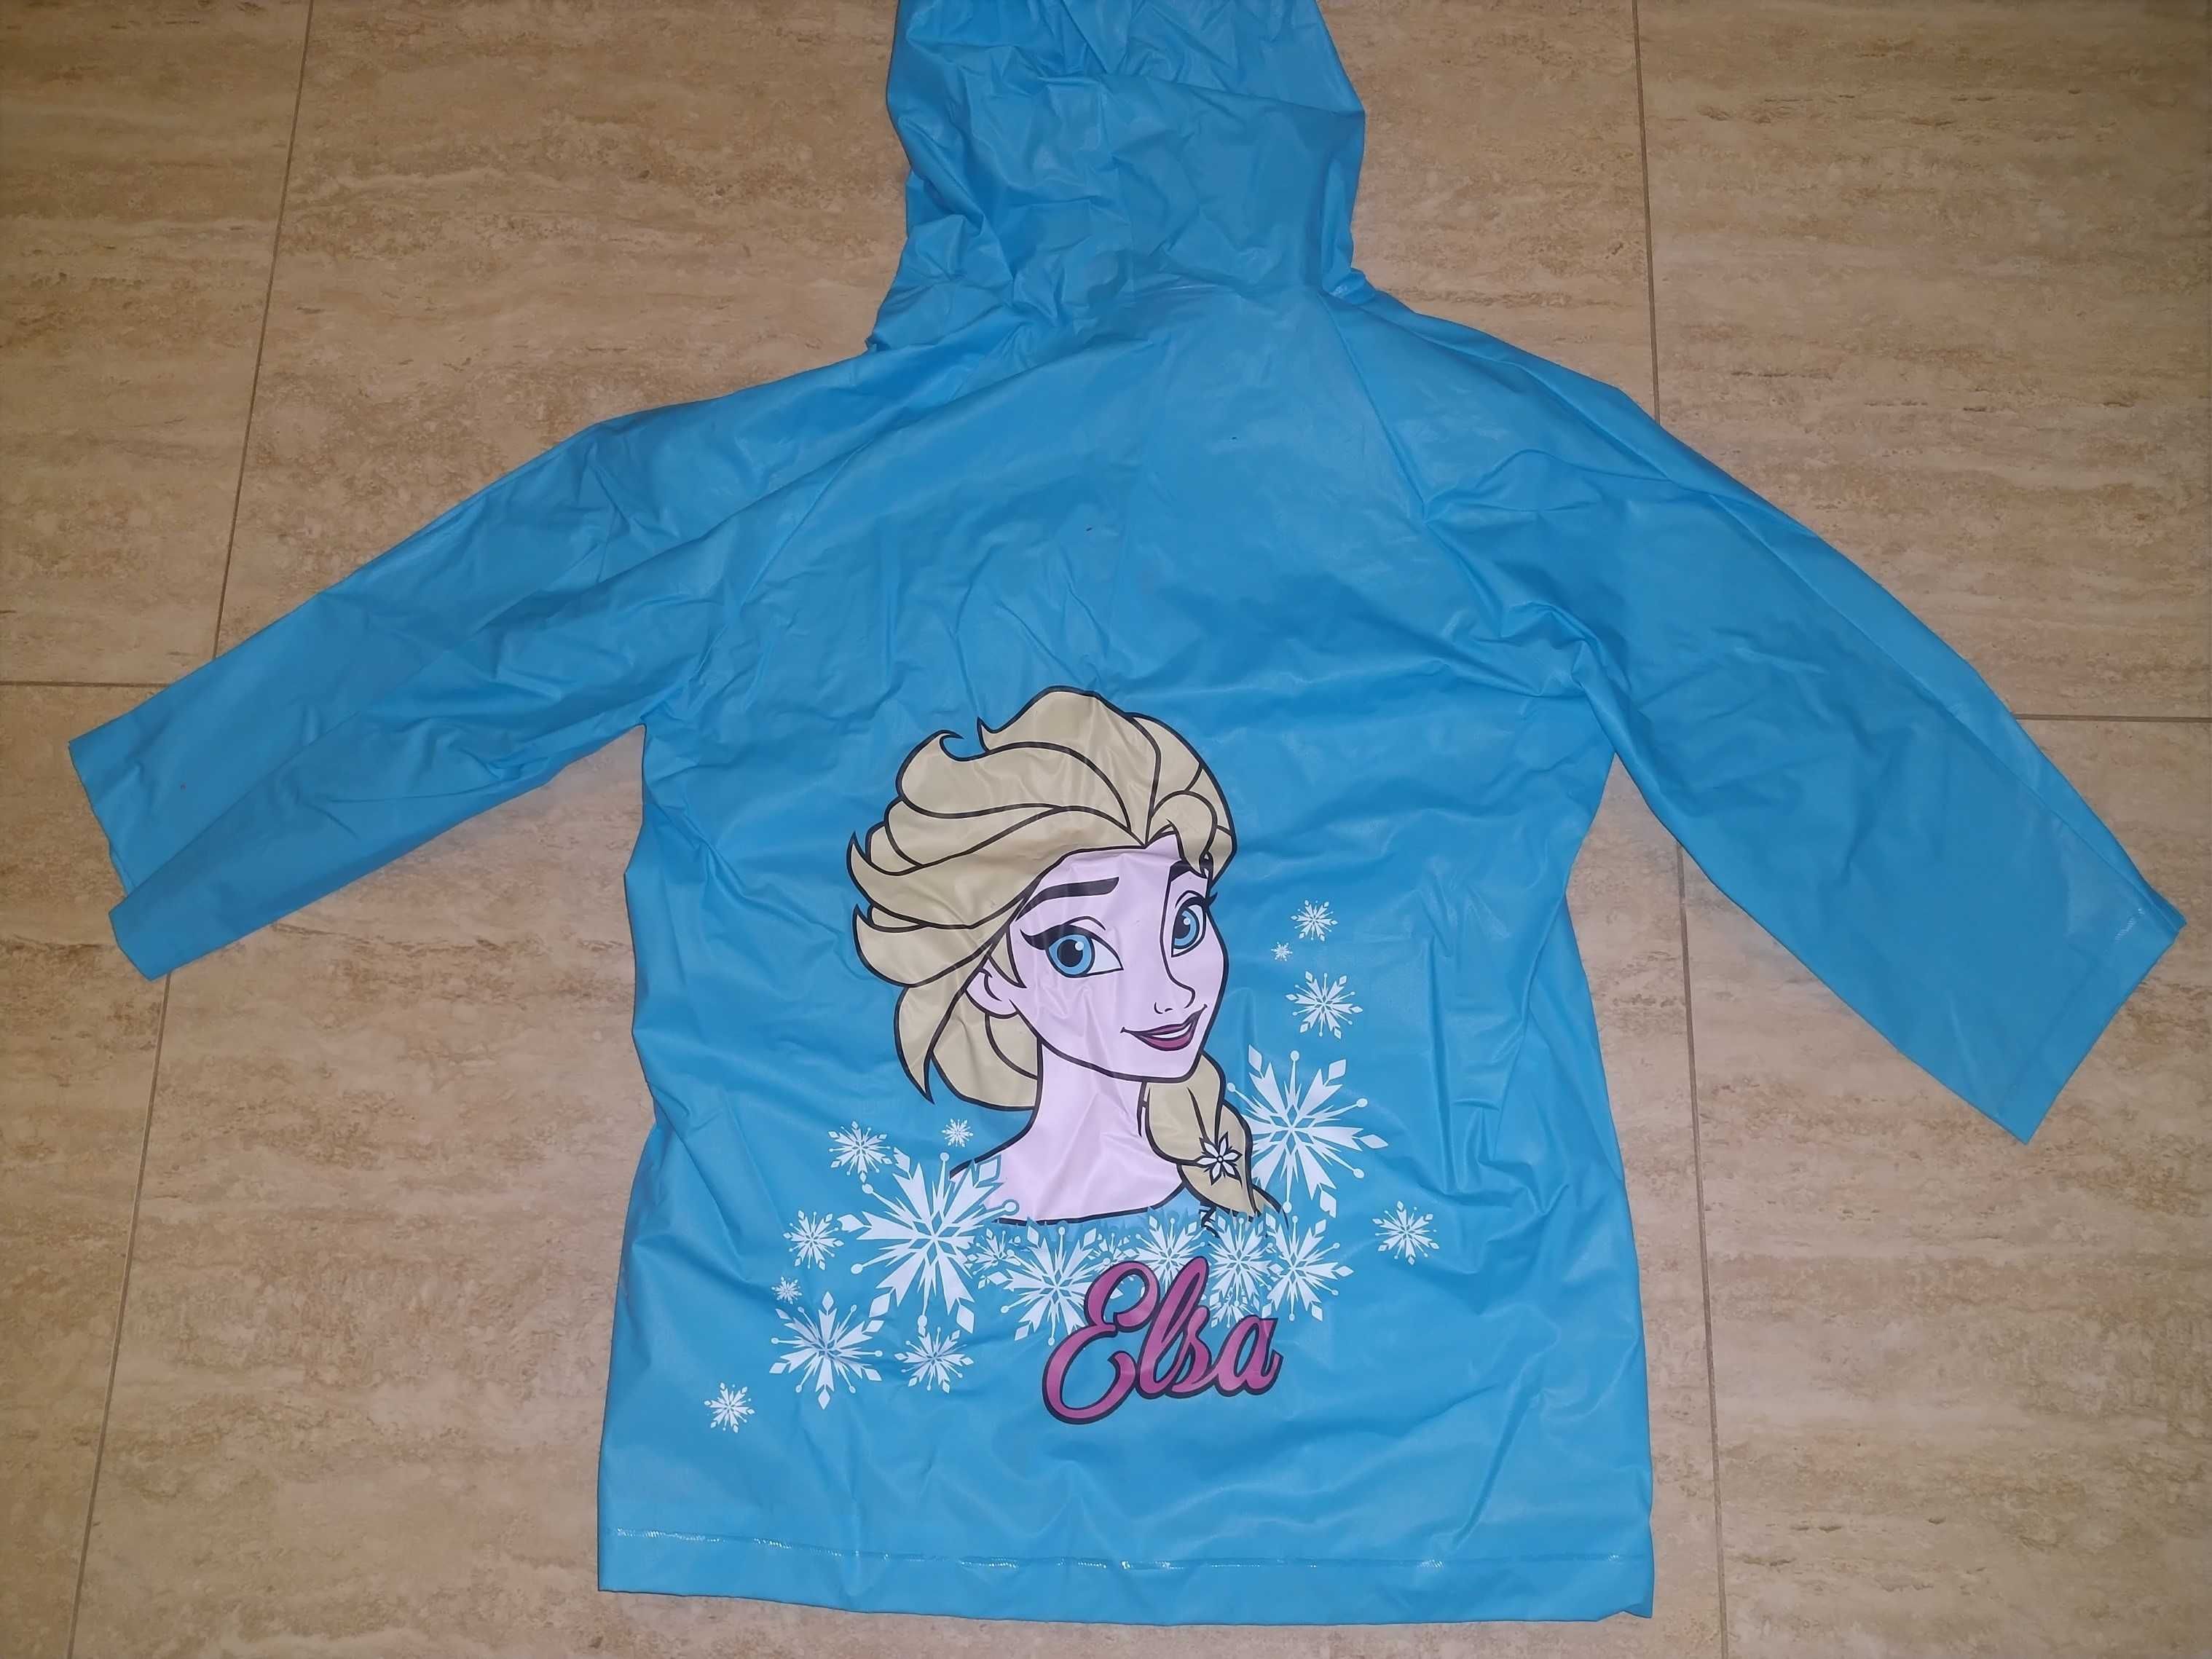 Płaszczyk przeciwdeszczowy Elsa Frozen, r. 98 - 104 cm